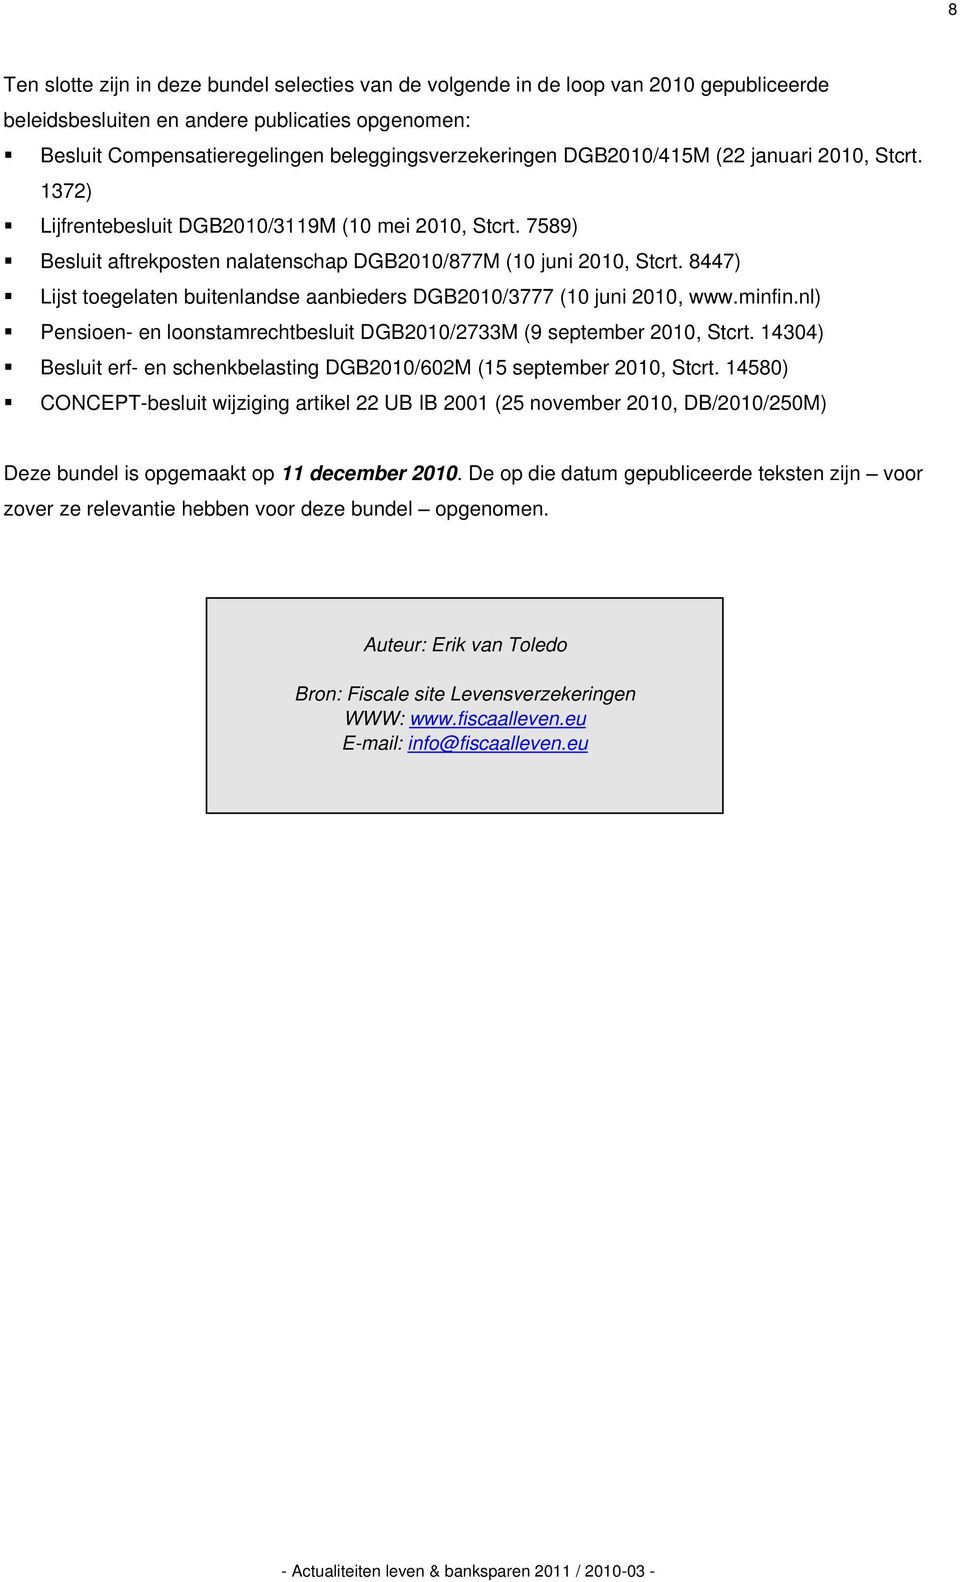 8447) Lijst toegelaten buitenlandse aanbieders DGB2010/3777 (10 juni 2010, www.minfin.nl) Pensioen- en loonstamrechtbesluit DGB2010/2733M (9 september 2010, Stcrt.